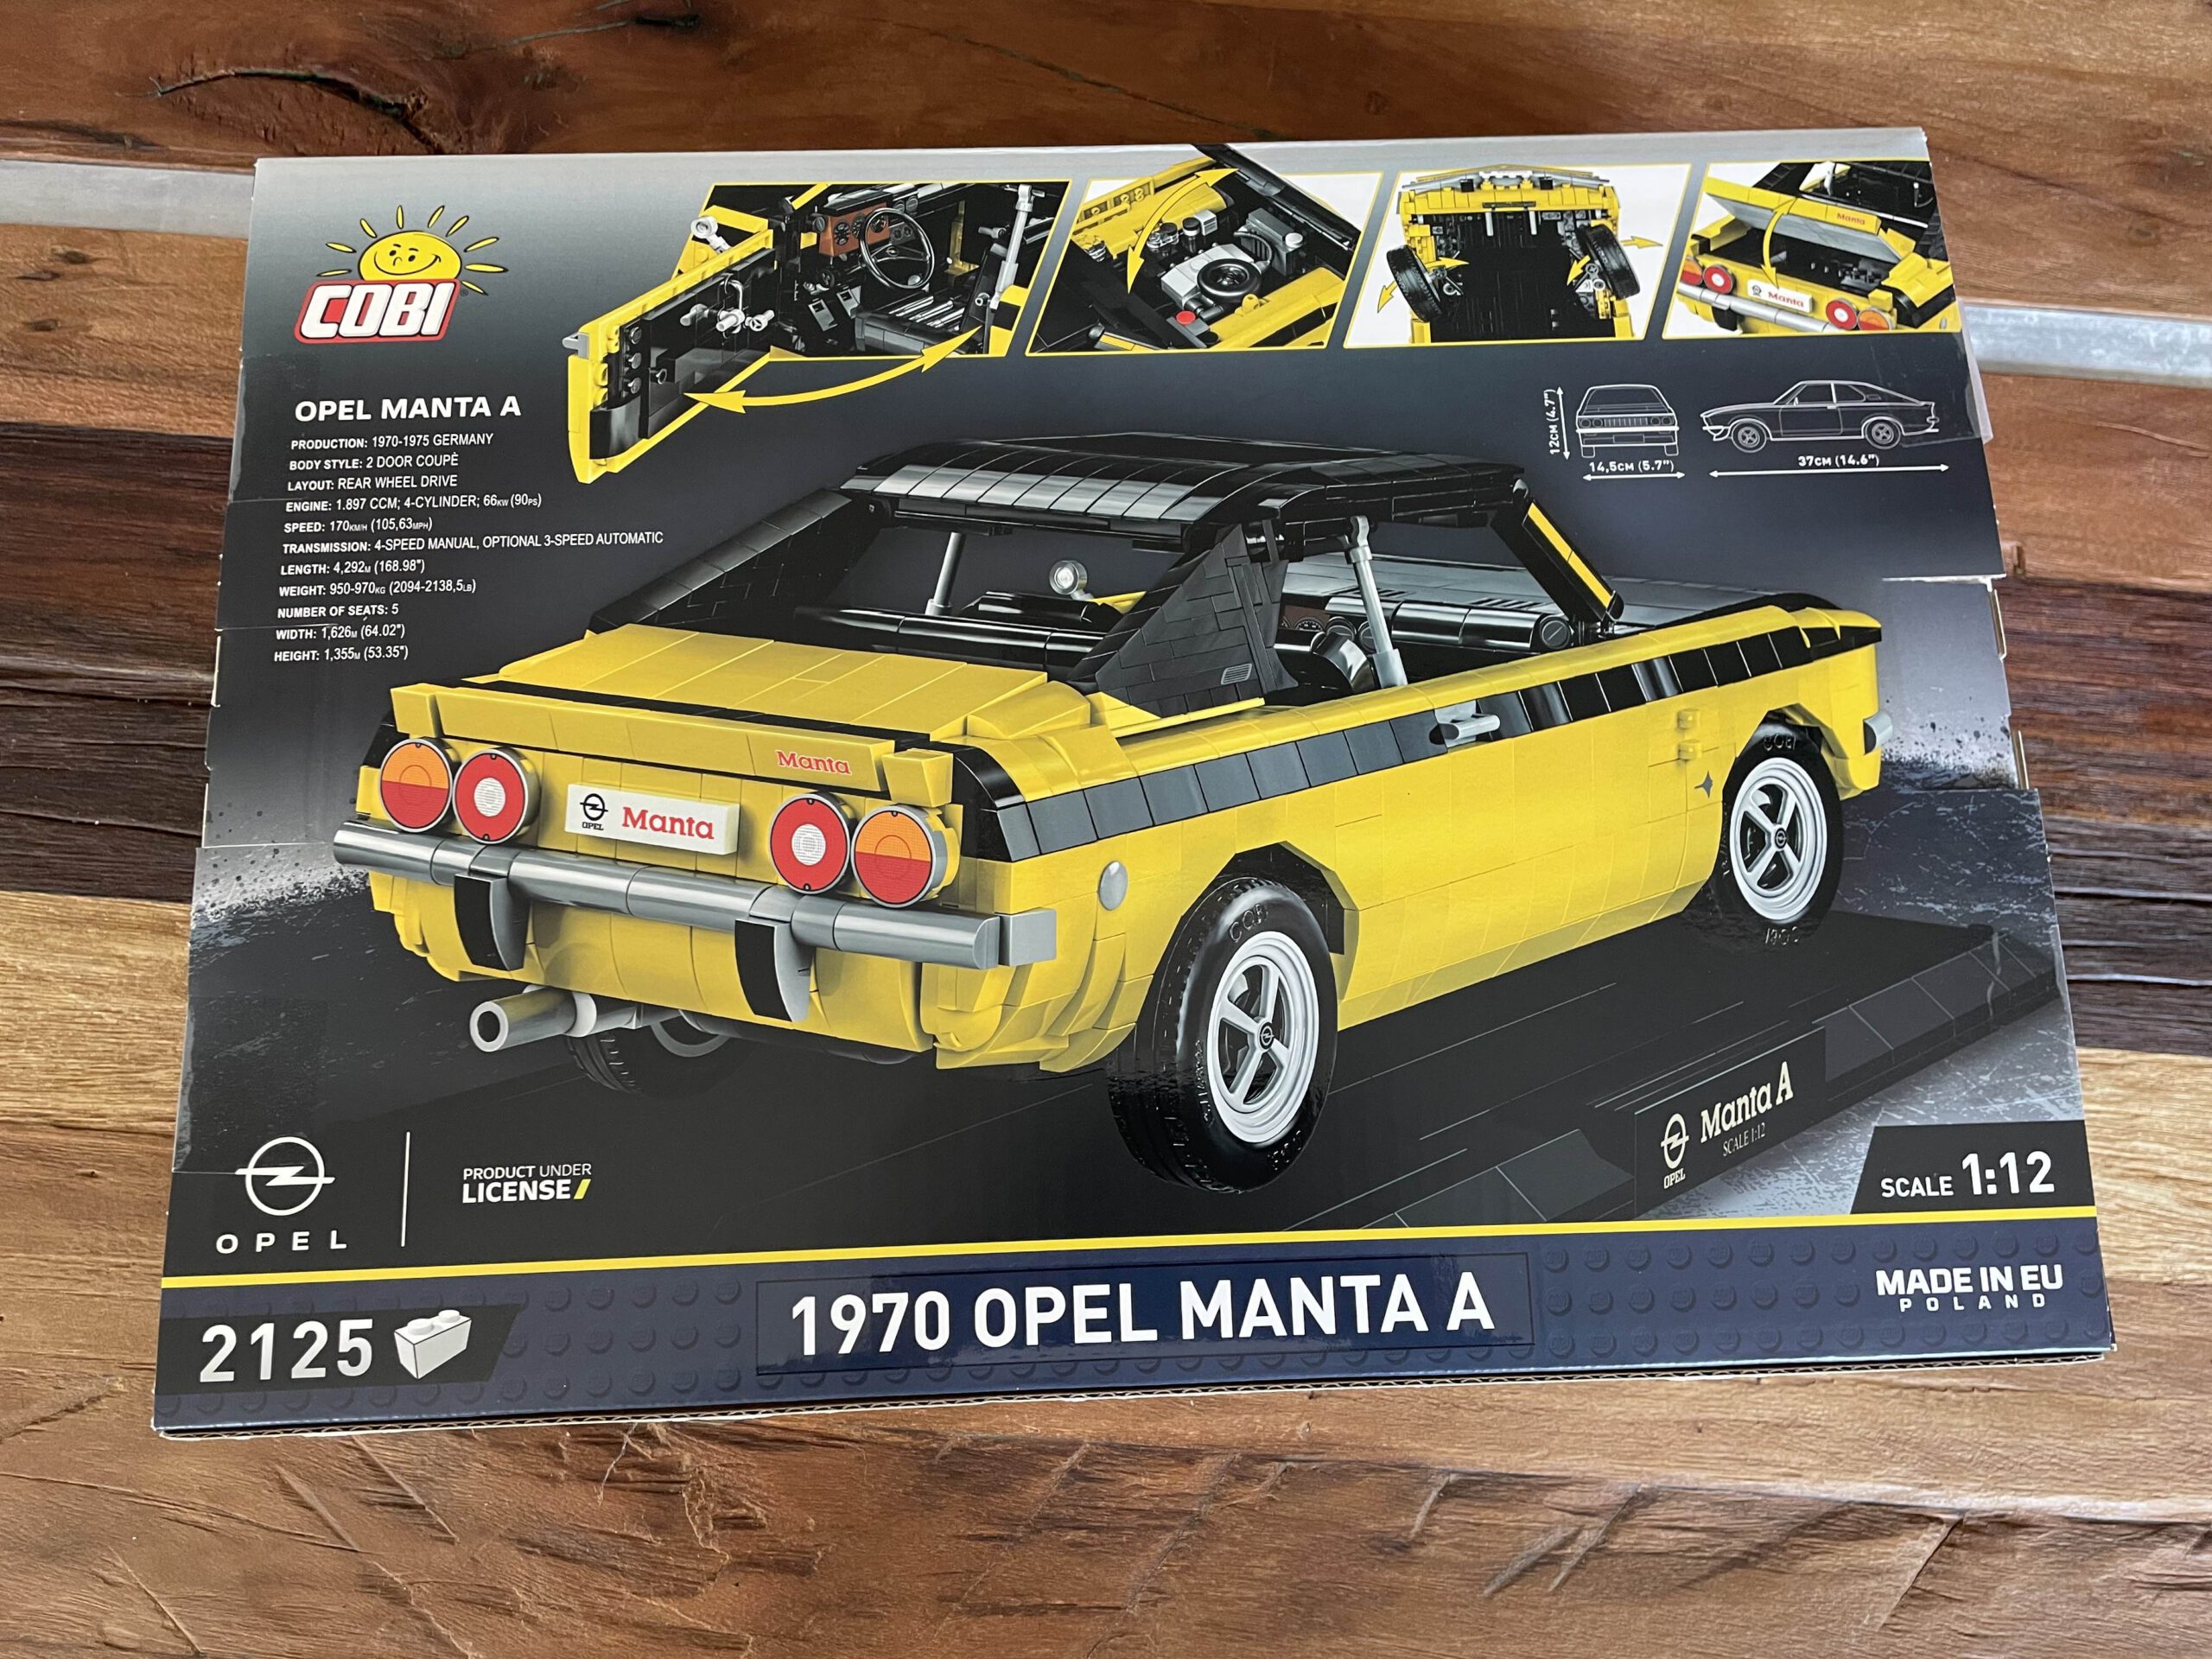 Cobi 24338 Opel Manta A 1970